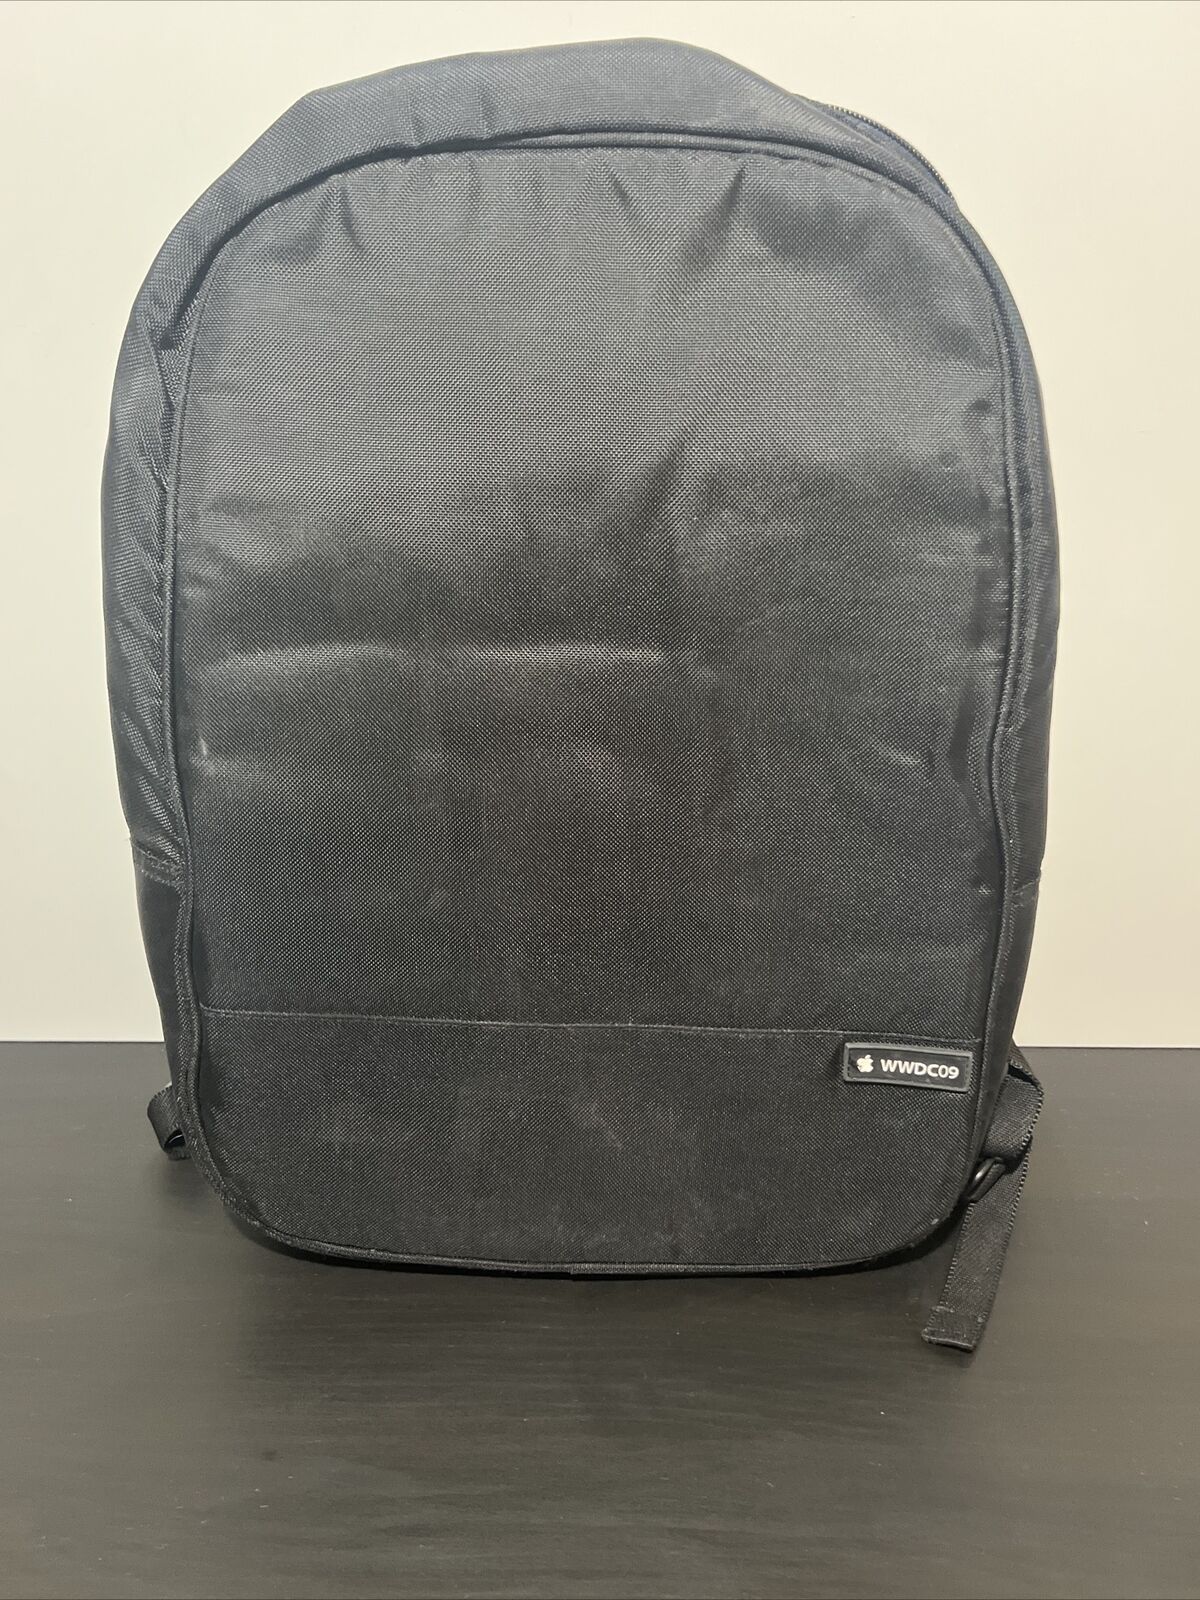 APPLE Logo WWDC 2009 Backpack Worldwide Developers Conference Black Laptop Bag